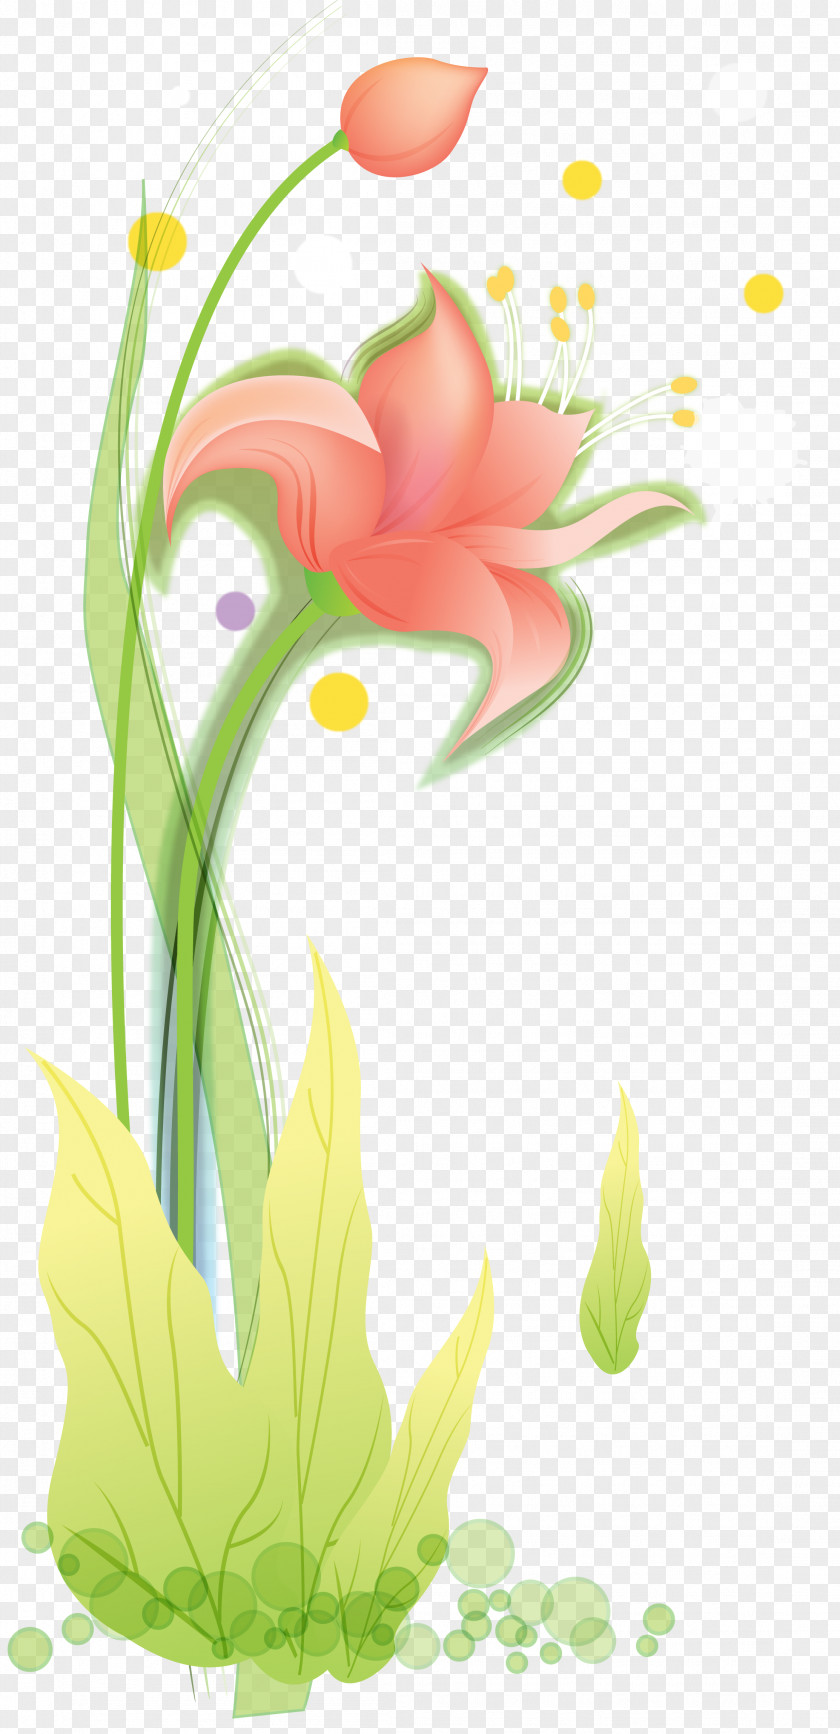 Menschlich Gesehen Ziemlich Abstossend Floral Design Flower Tulip Petal Garden Roses PNG